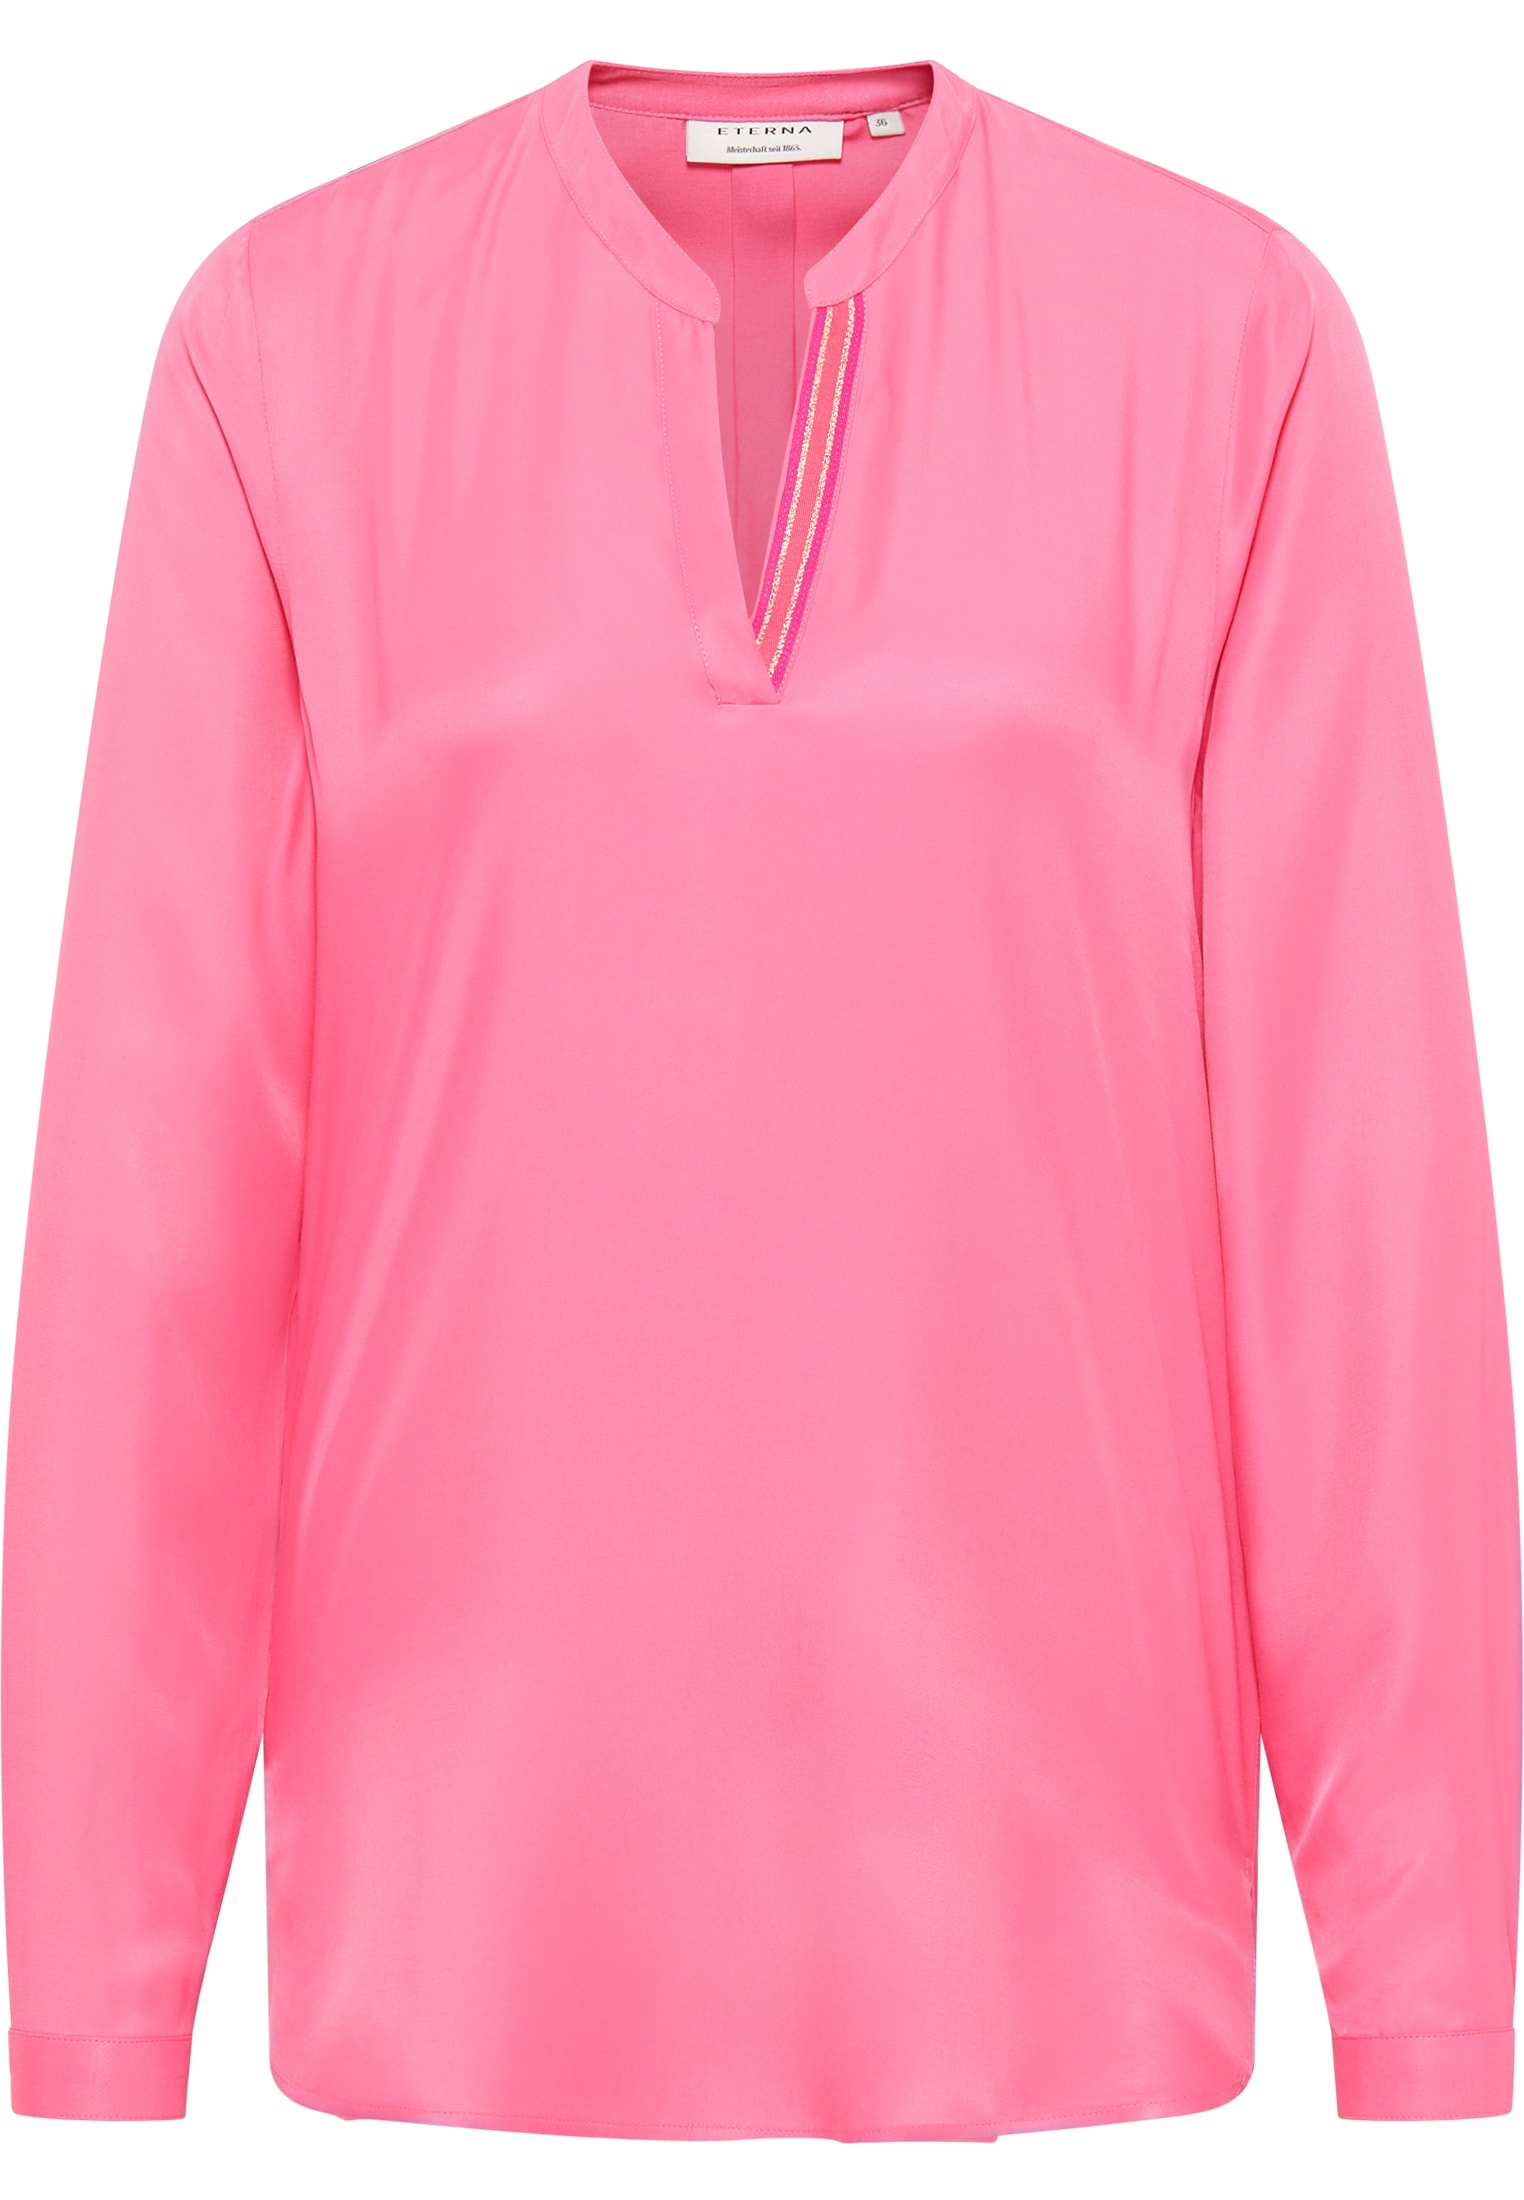 | Bluse in | 2BL04272-15-21-36-1/1 pink 36 | Langarm Viscose pink | Shirt unifarben